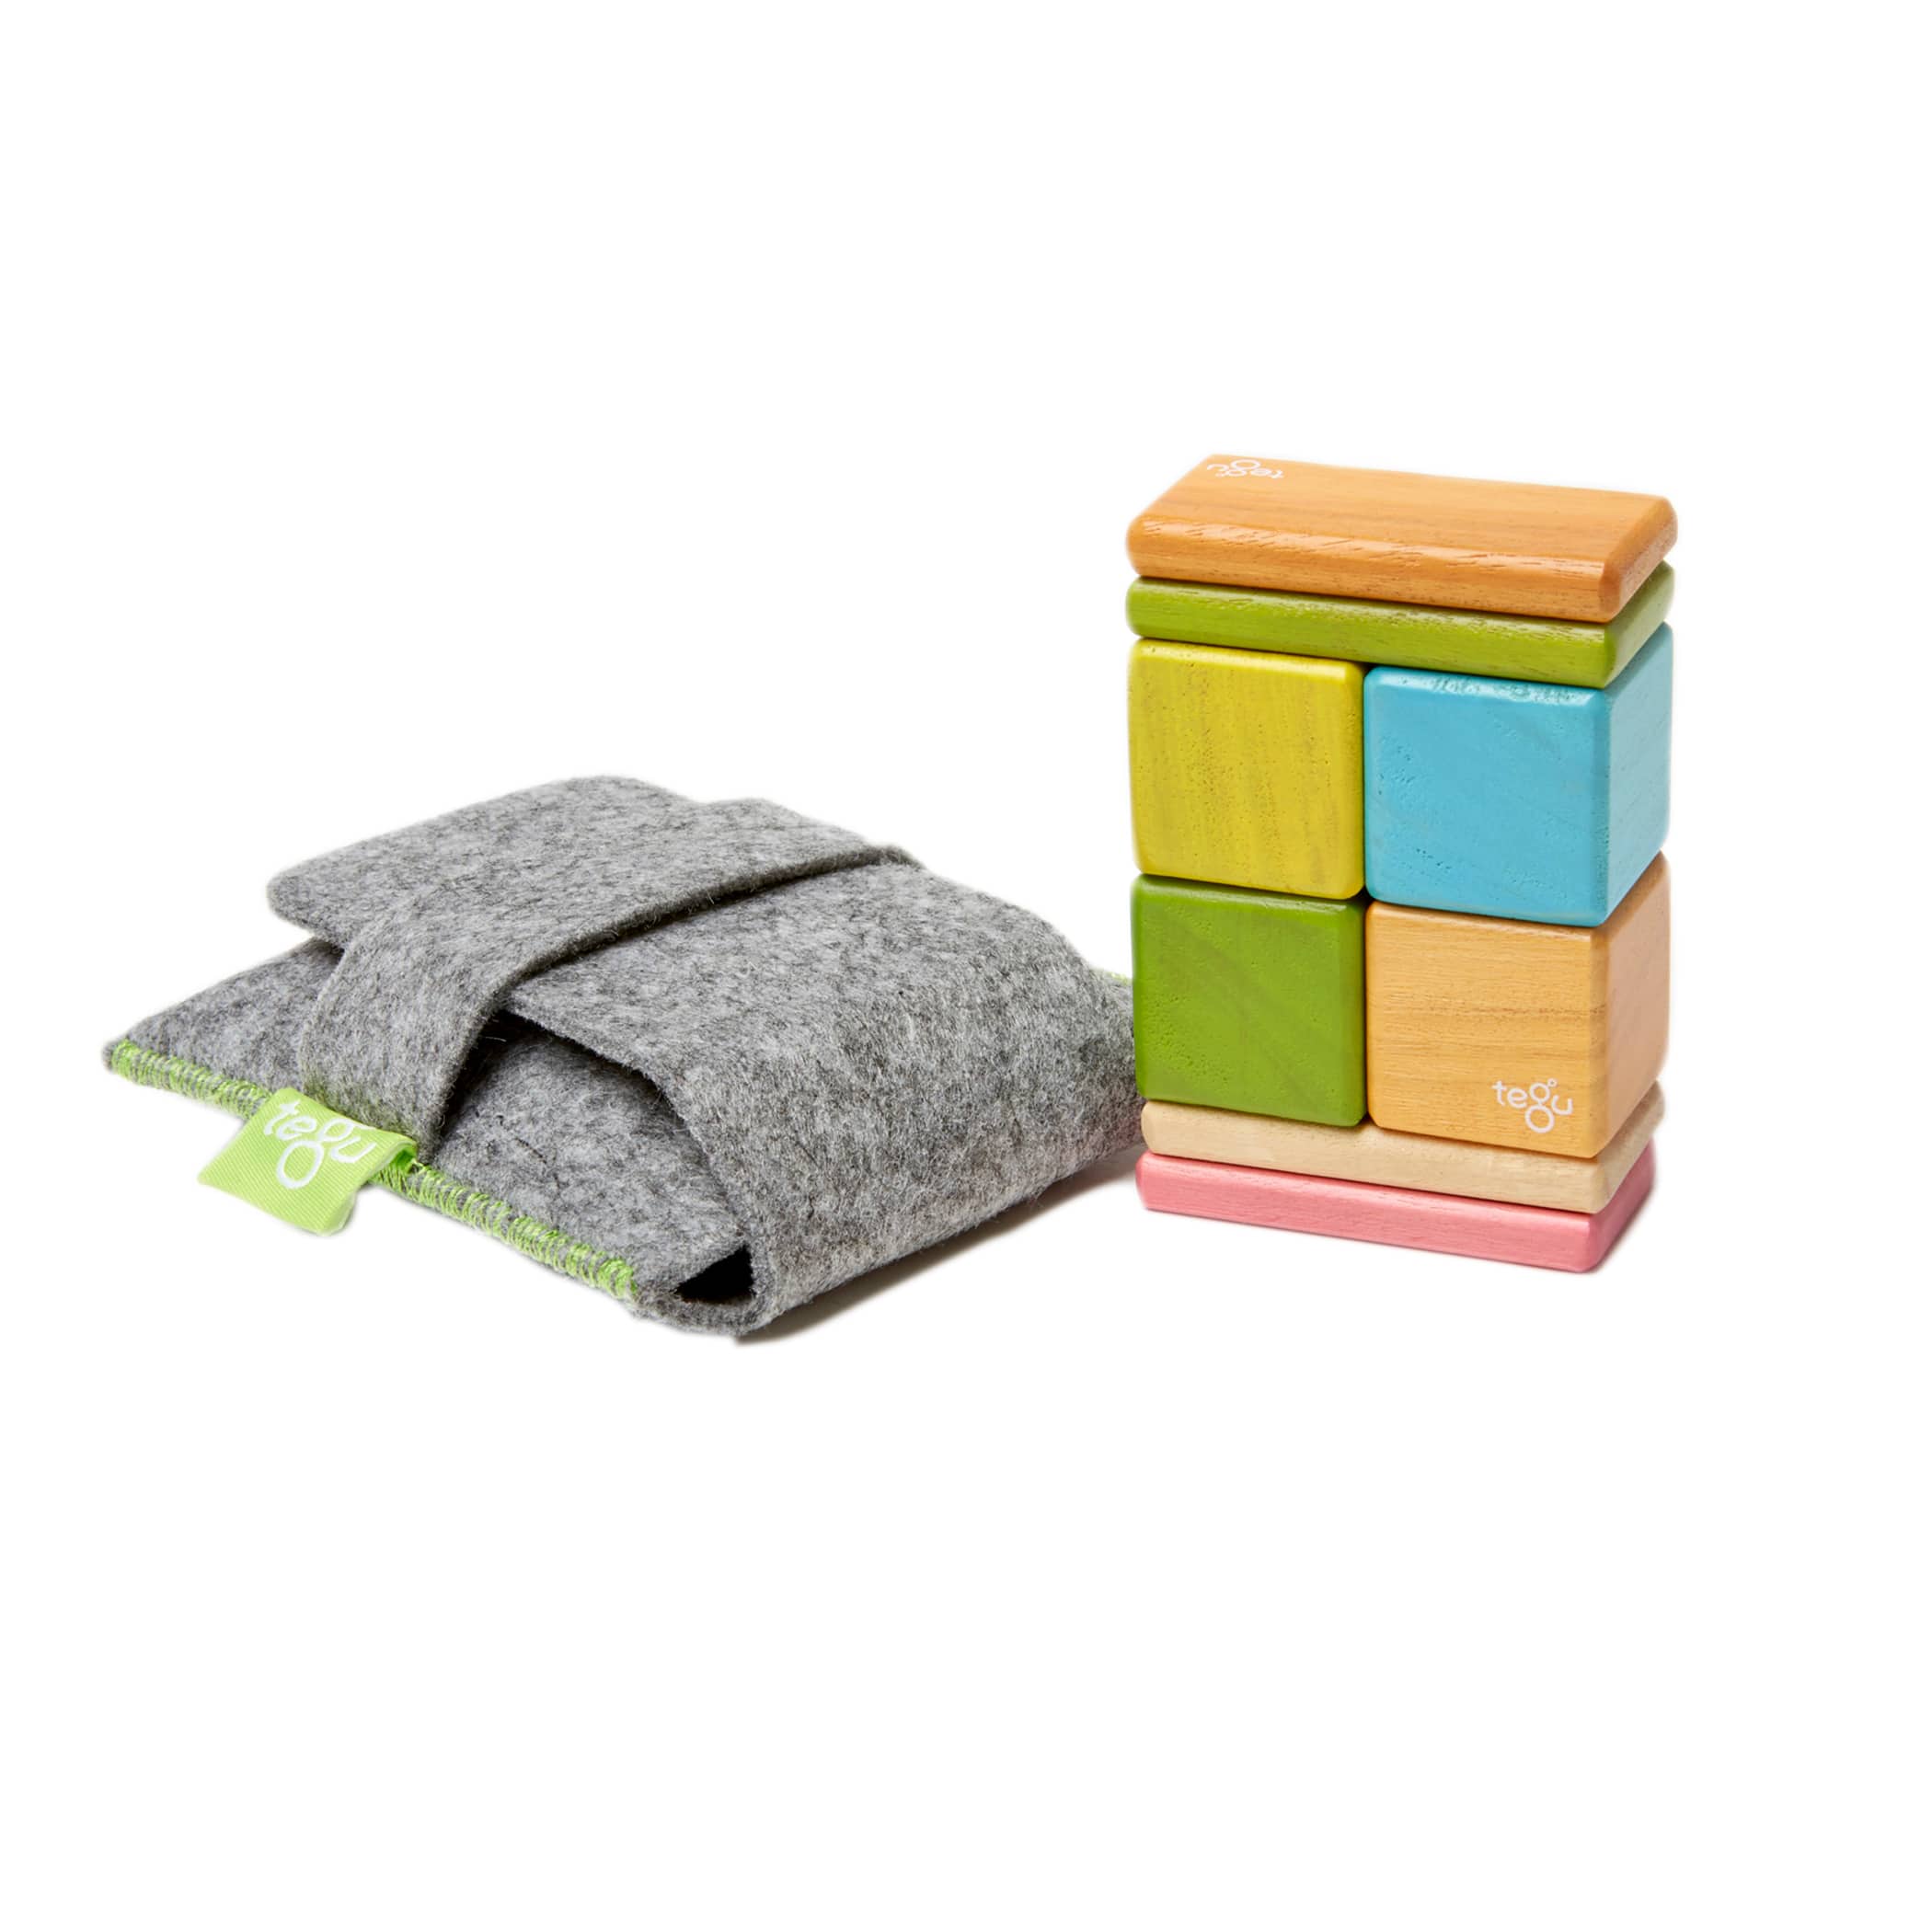 Tegu Tints Block Pocket Pouch Set